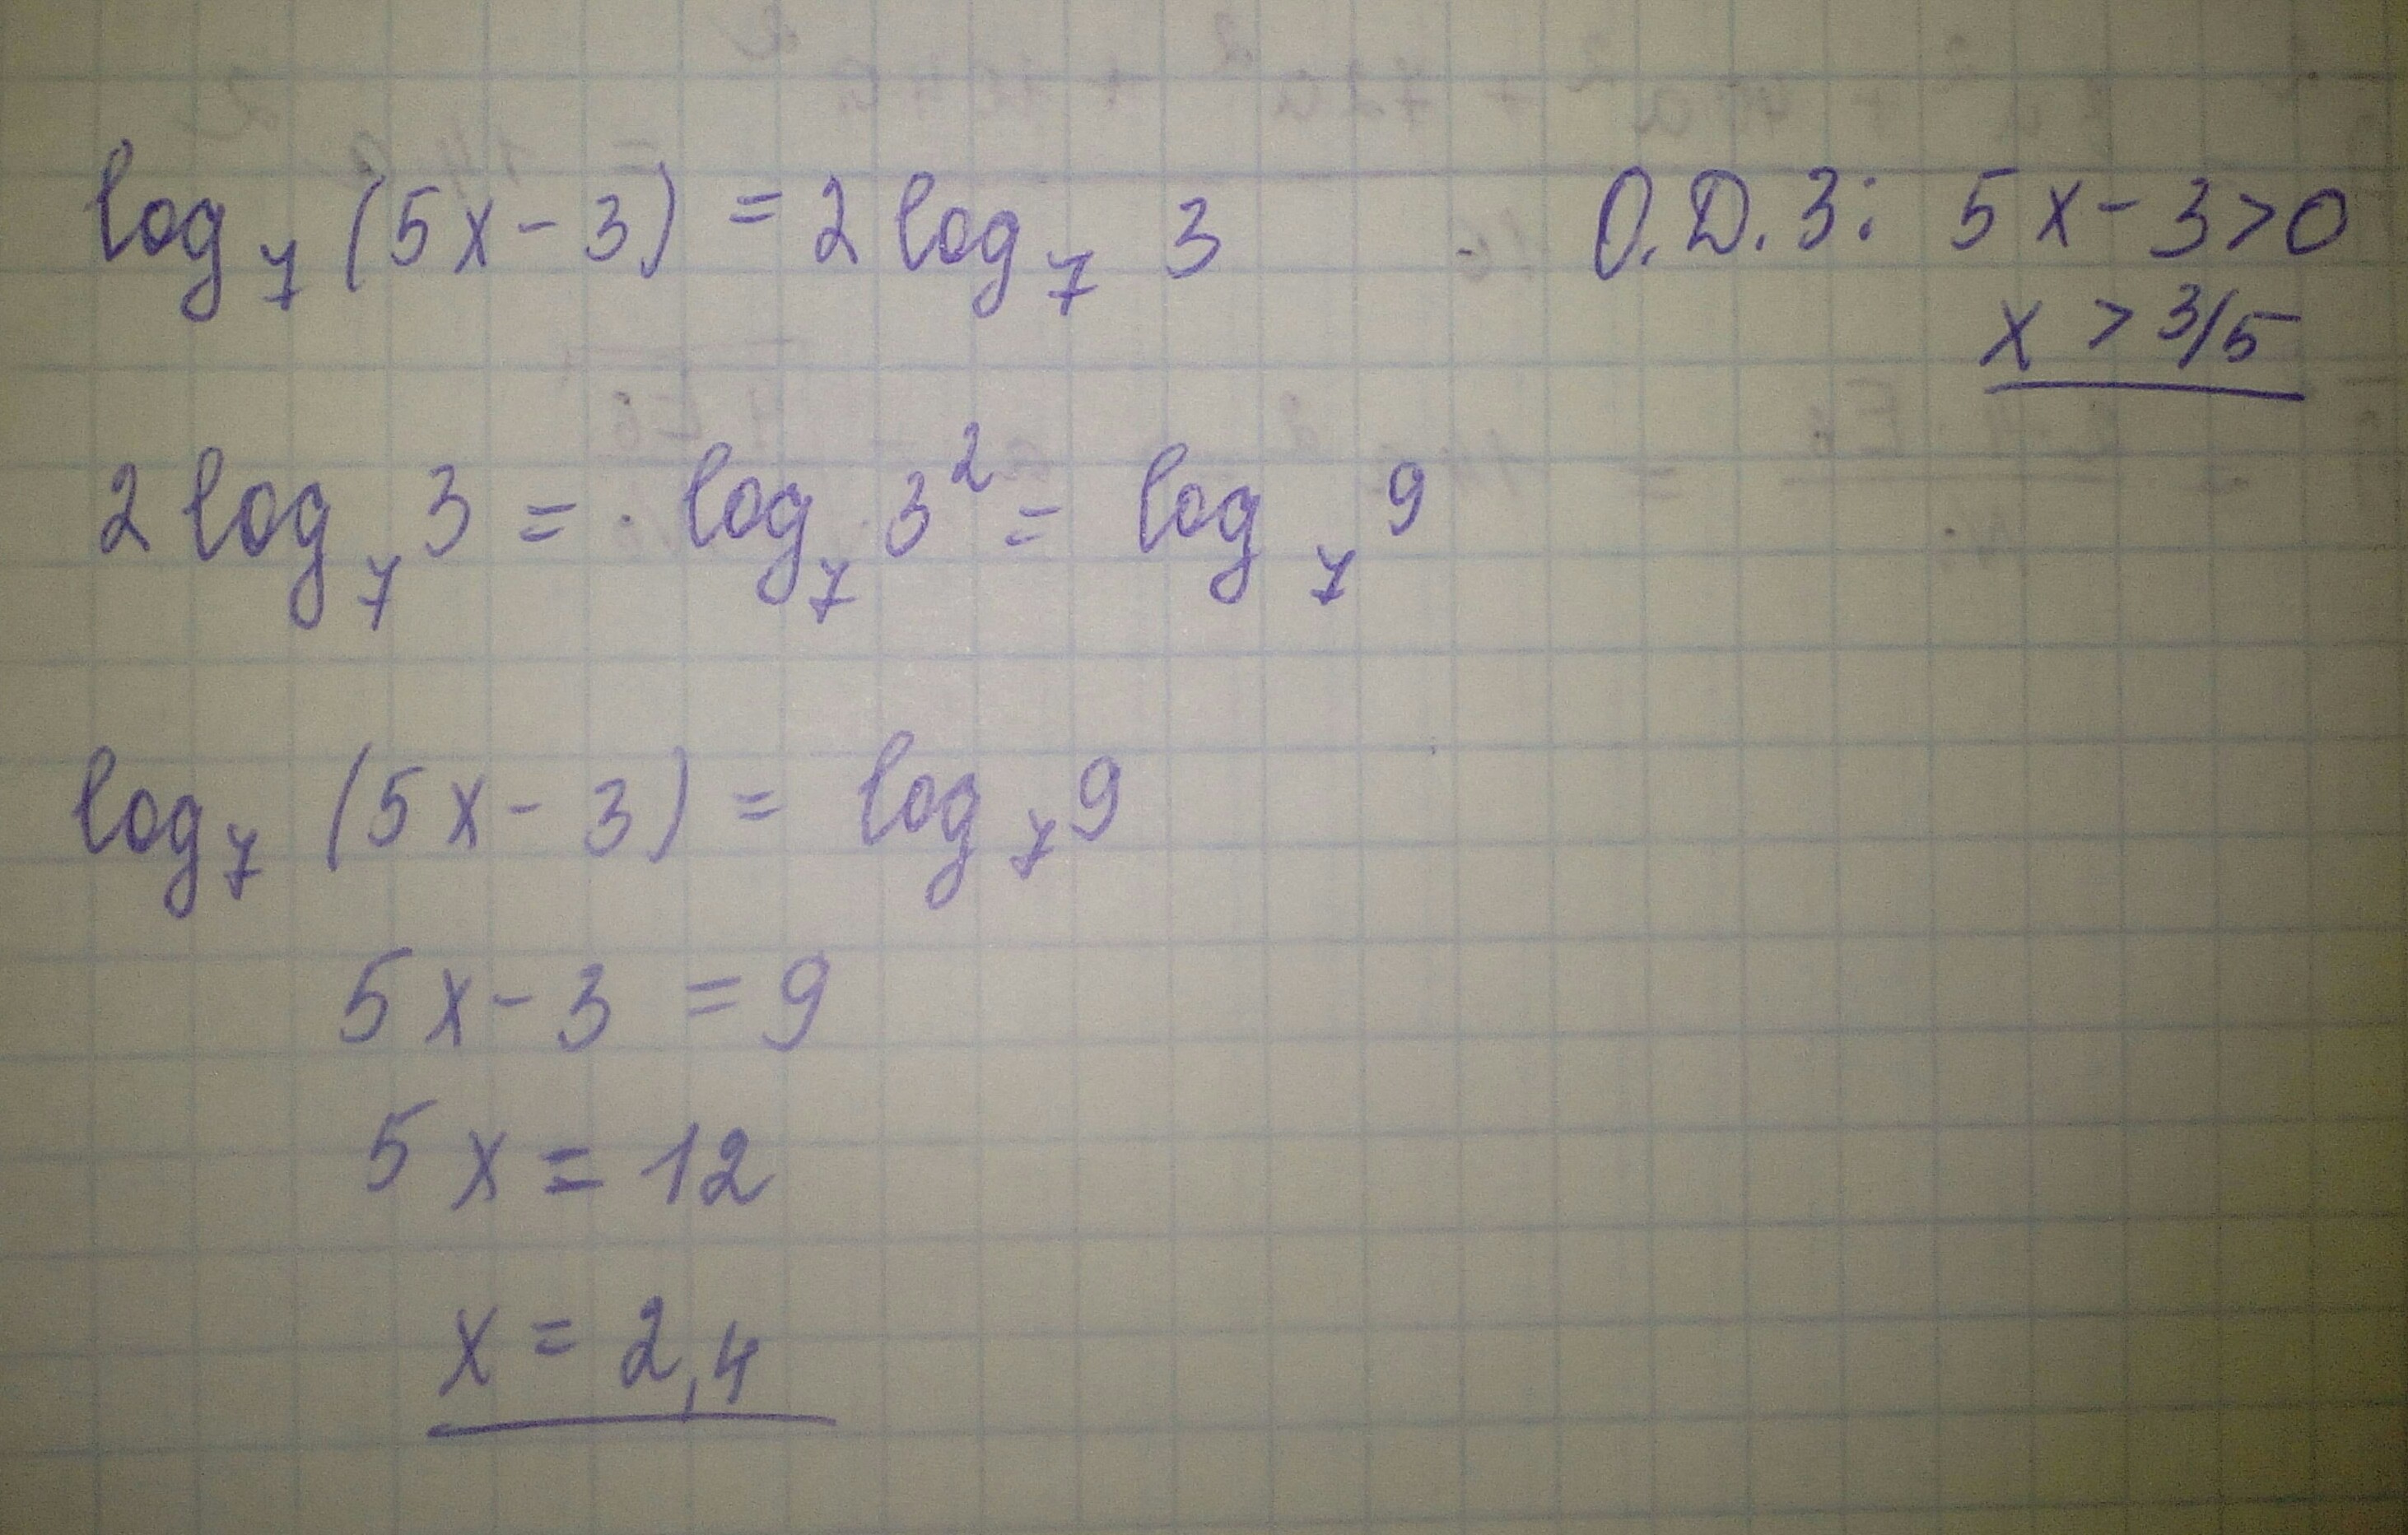 Найдите корень x 3 9x. Найдите корни уравнения log5 (x-1)=2. Найдите корень уравнения Лог. Log(2)(x^2-5)*(log(3)(7-x))^2+3*log(2)(x^2-5)-log(3)(7-x)-6=0. Найдите корень уравнения log4 2 5x+7 3.